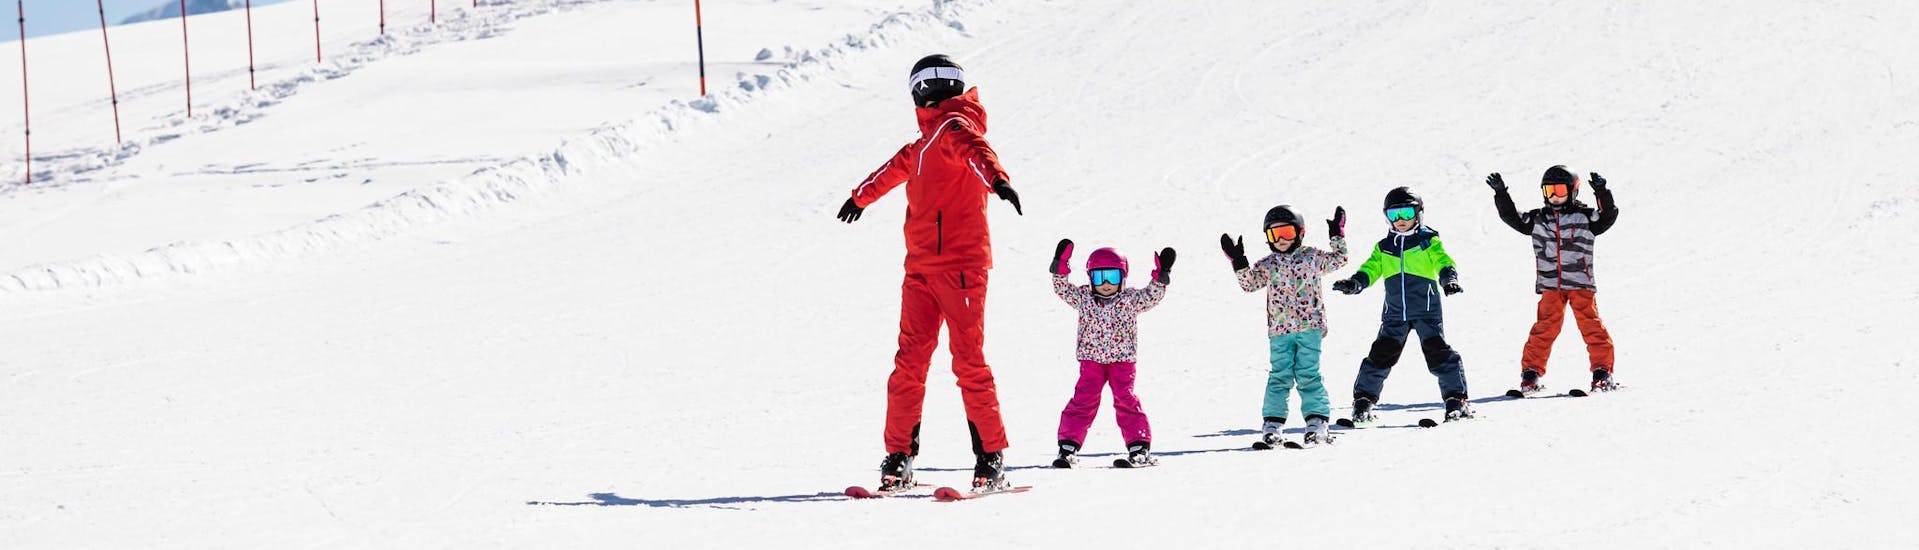 Moniteur de ski et enfants profitent d'une leçon de ski dans une école de ski près de Liberec.